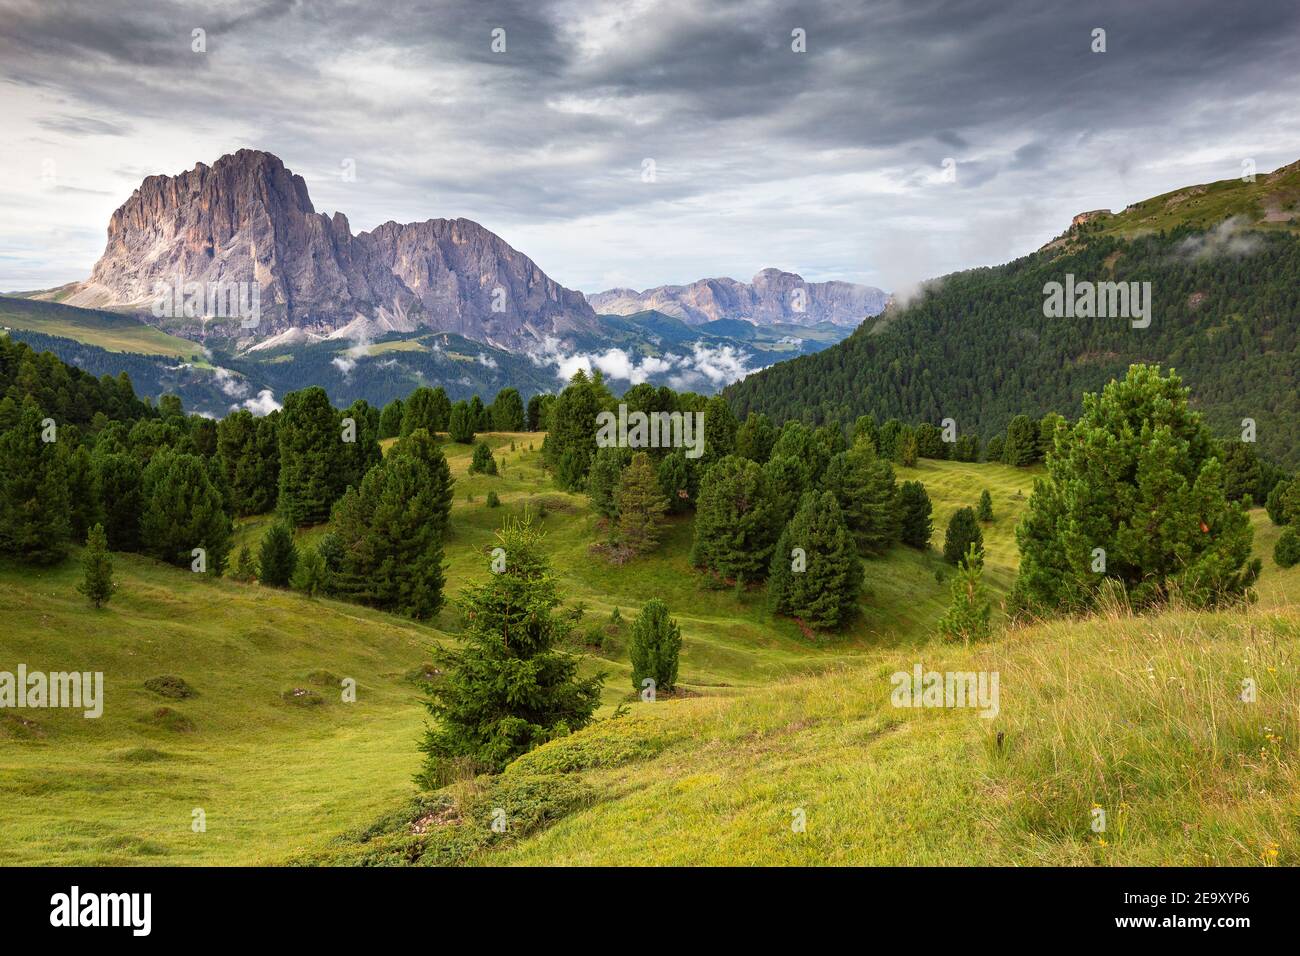 Val Gardena alpine valley. Alpine meadow and stone pines. Sassolungo and Sassopiatto mountain peaks. The Gardena Dolomites. Italian Alps. Europe. Stock Photo